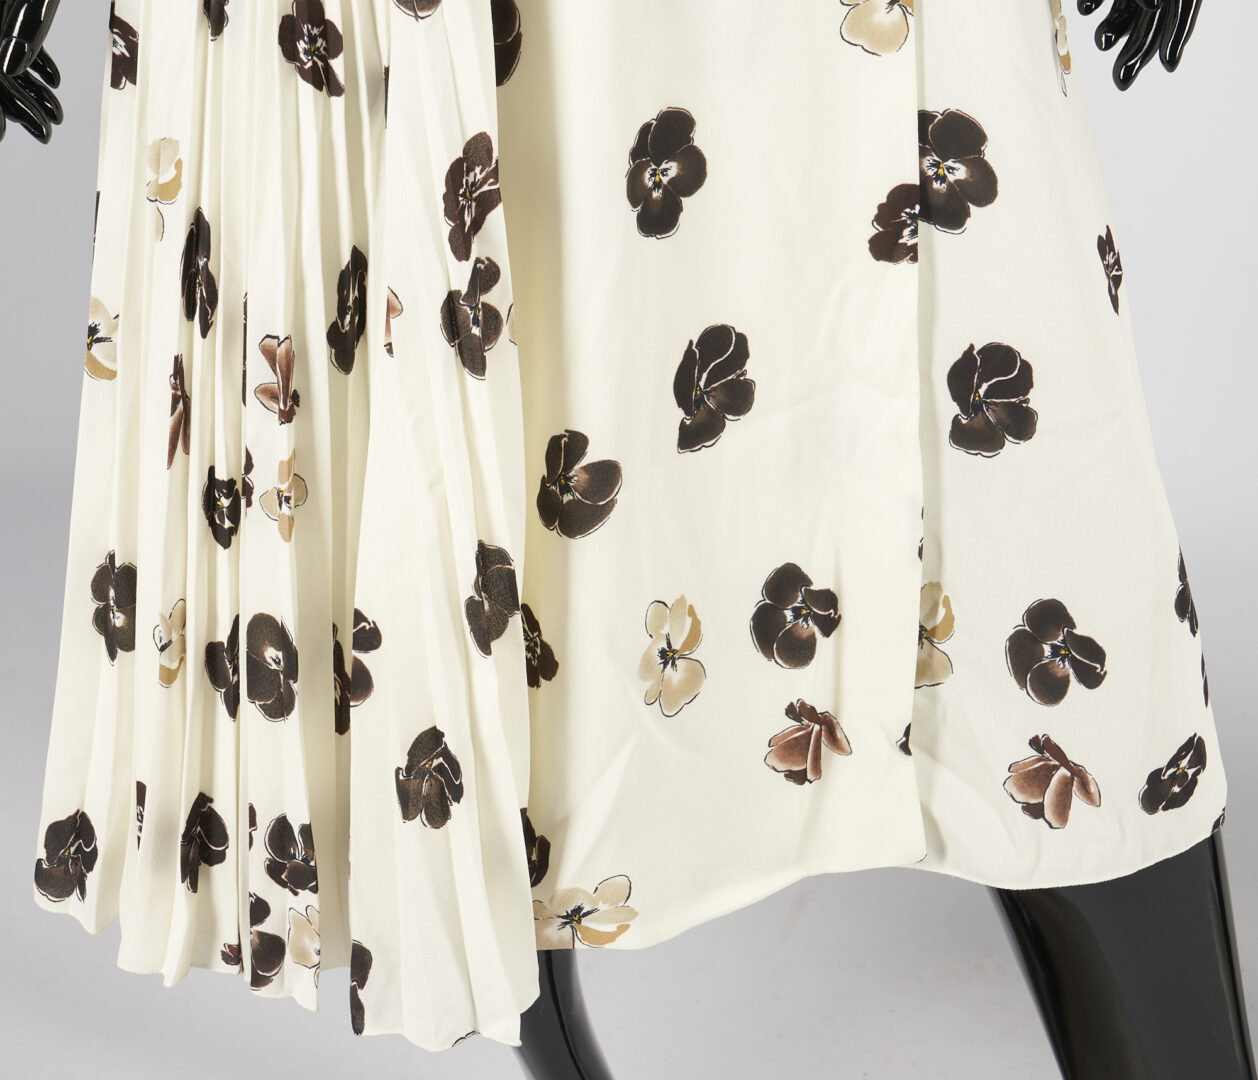 Lot 740: 2 Prada Dresses, Gabardine Sleeveless & Floral Patterned